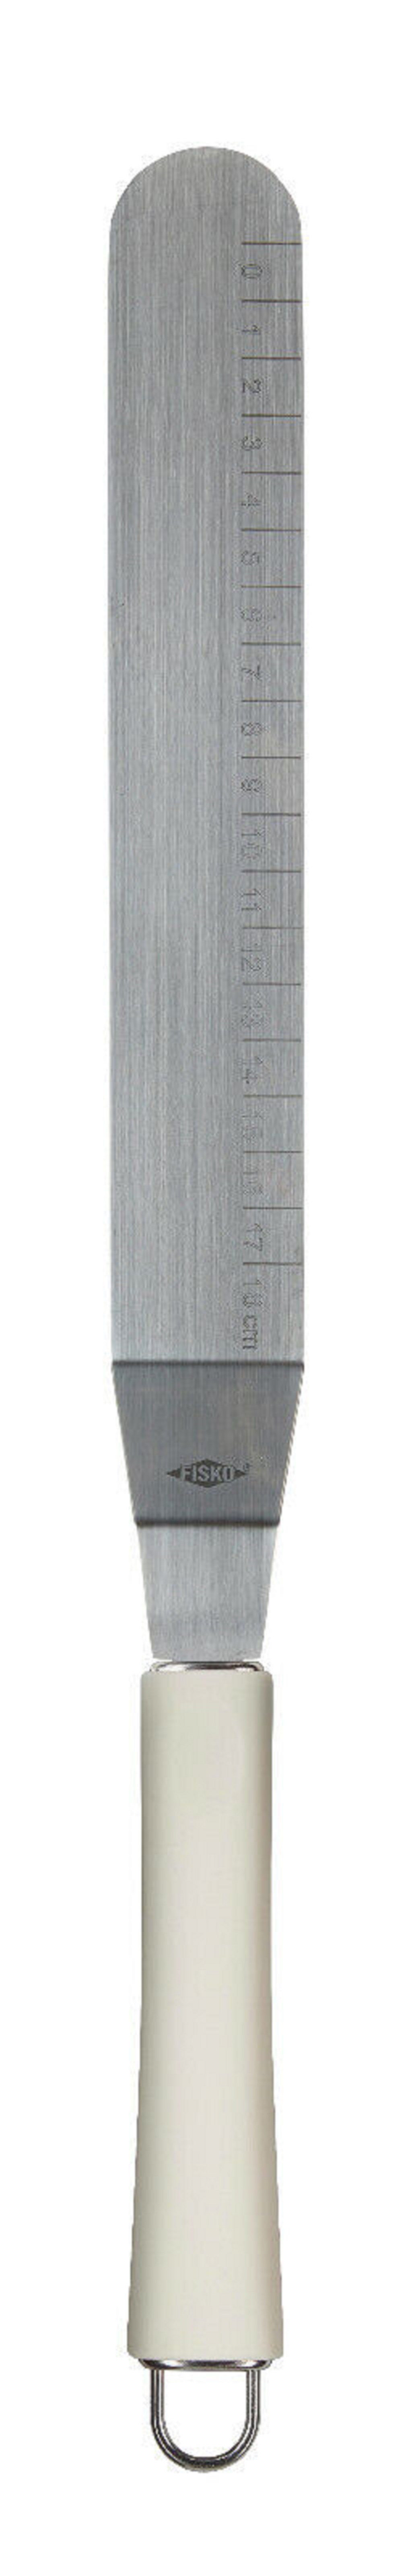 ALPFA Tortenmesser Edelstahl Glasurmesser Streichpalette Schaber Spachtel weiß 32 cm, aus rostfreiem Edelstahl